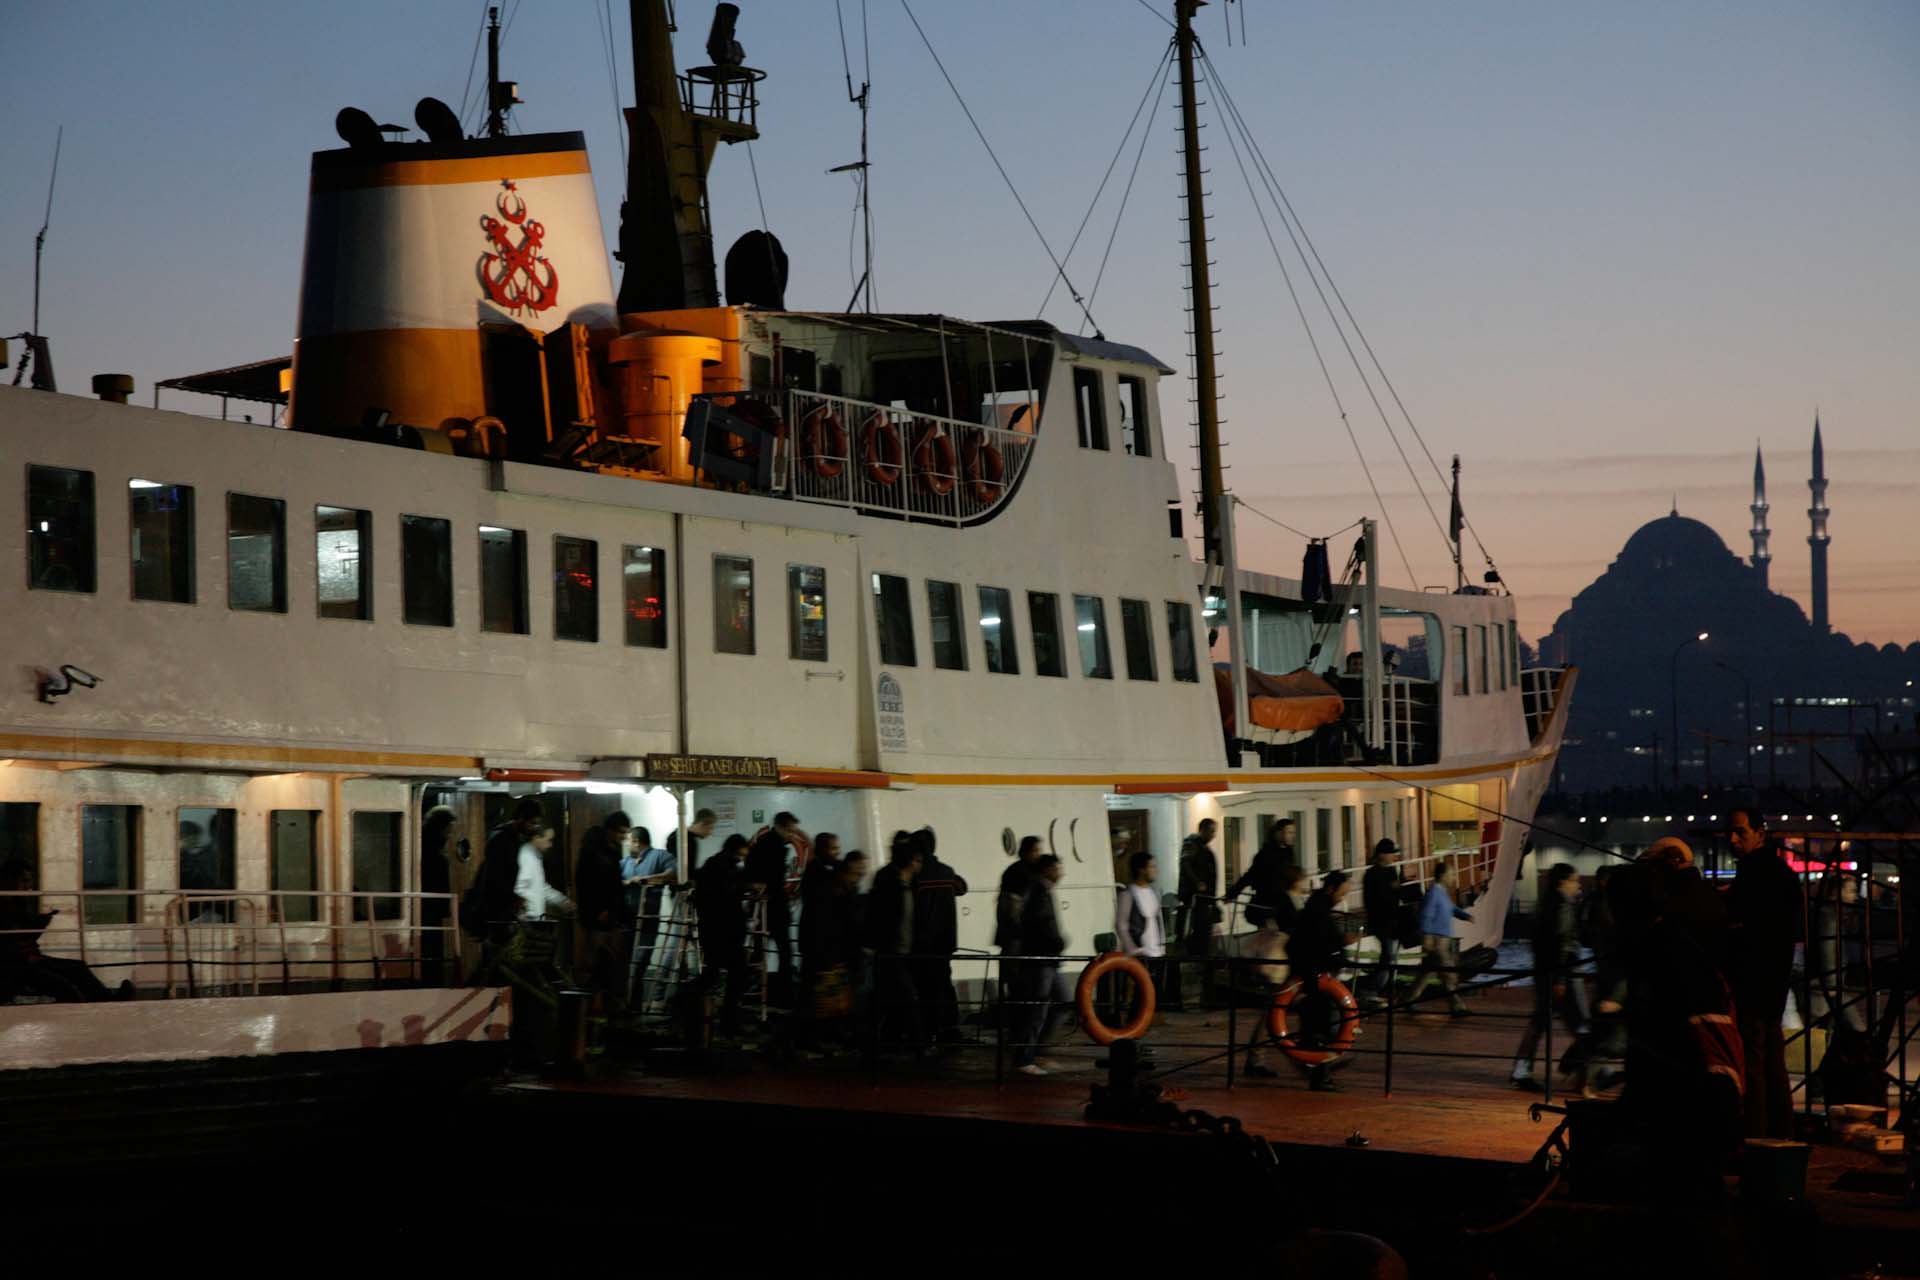 Ferry boarding in Karaköy